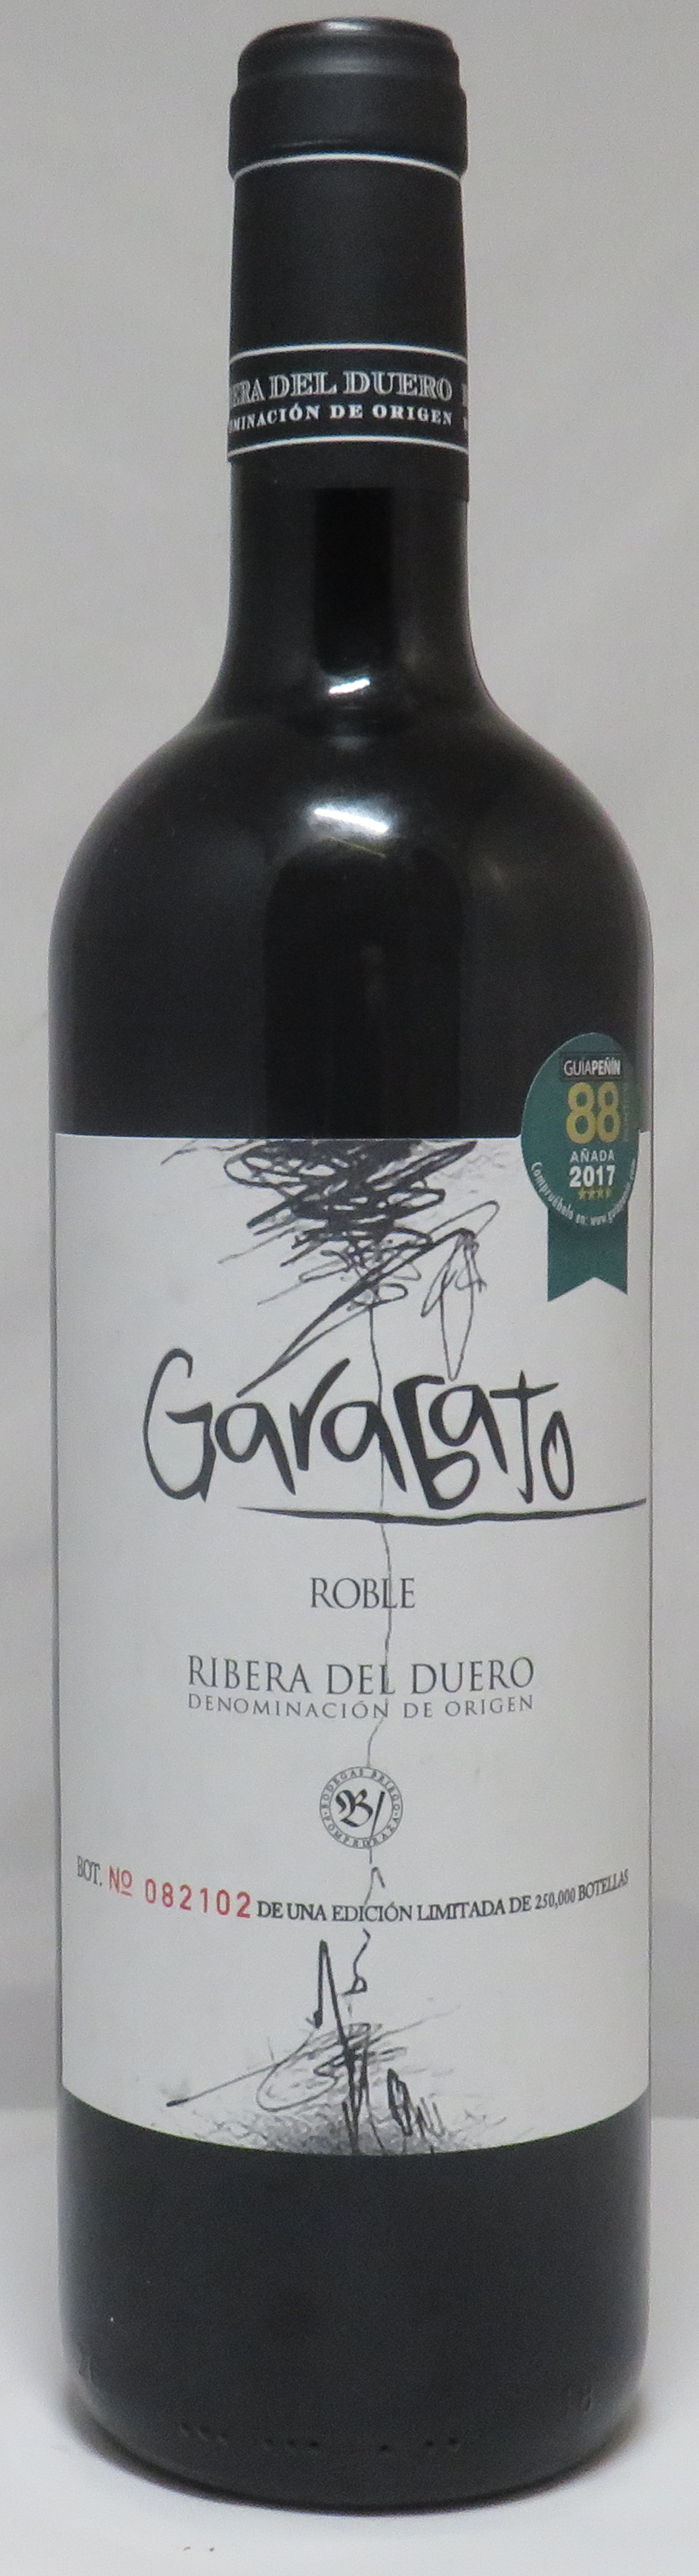 Garabato, Roble - No sé de vinos